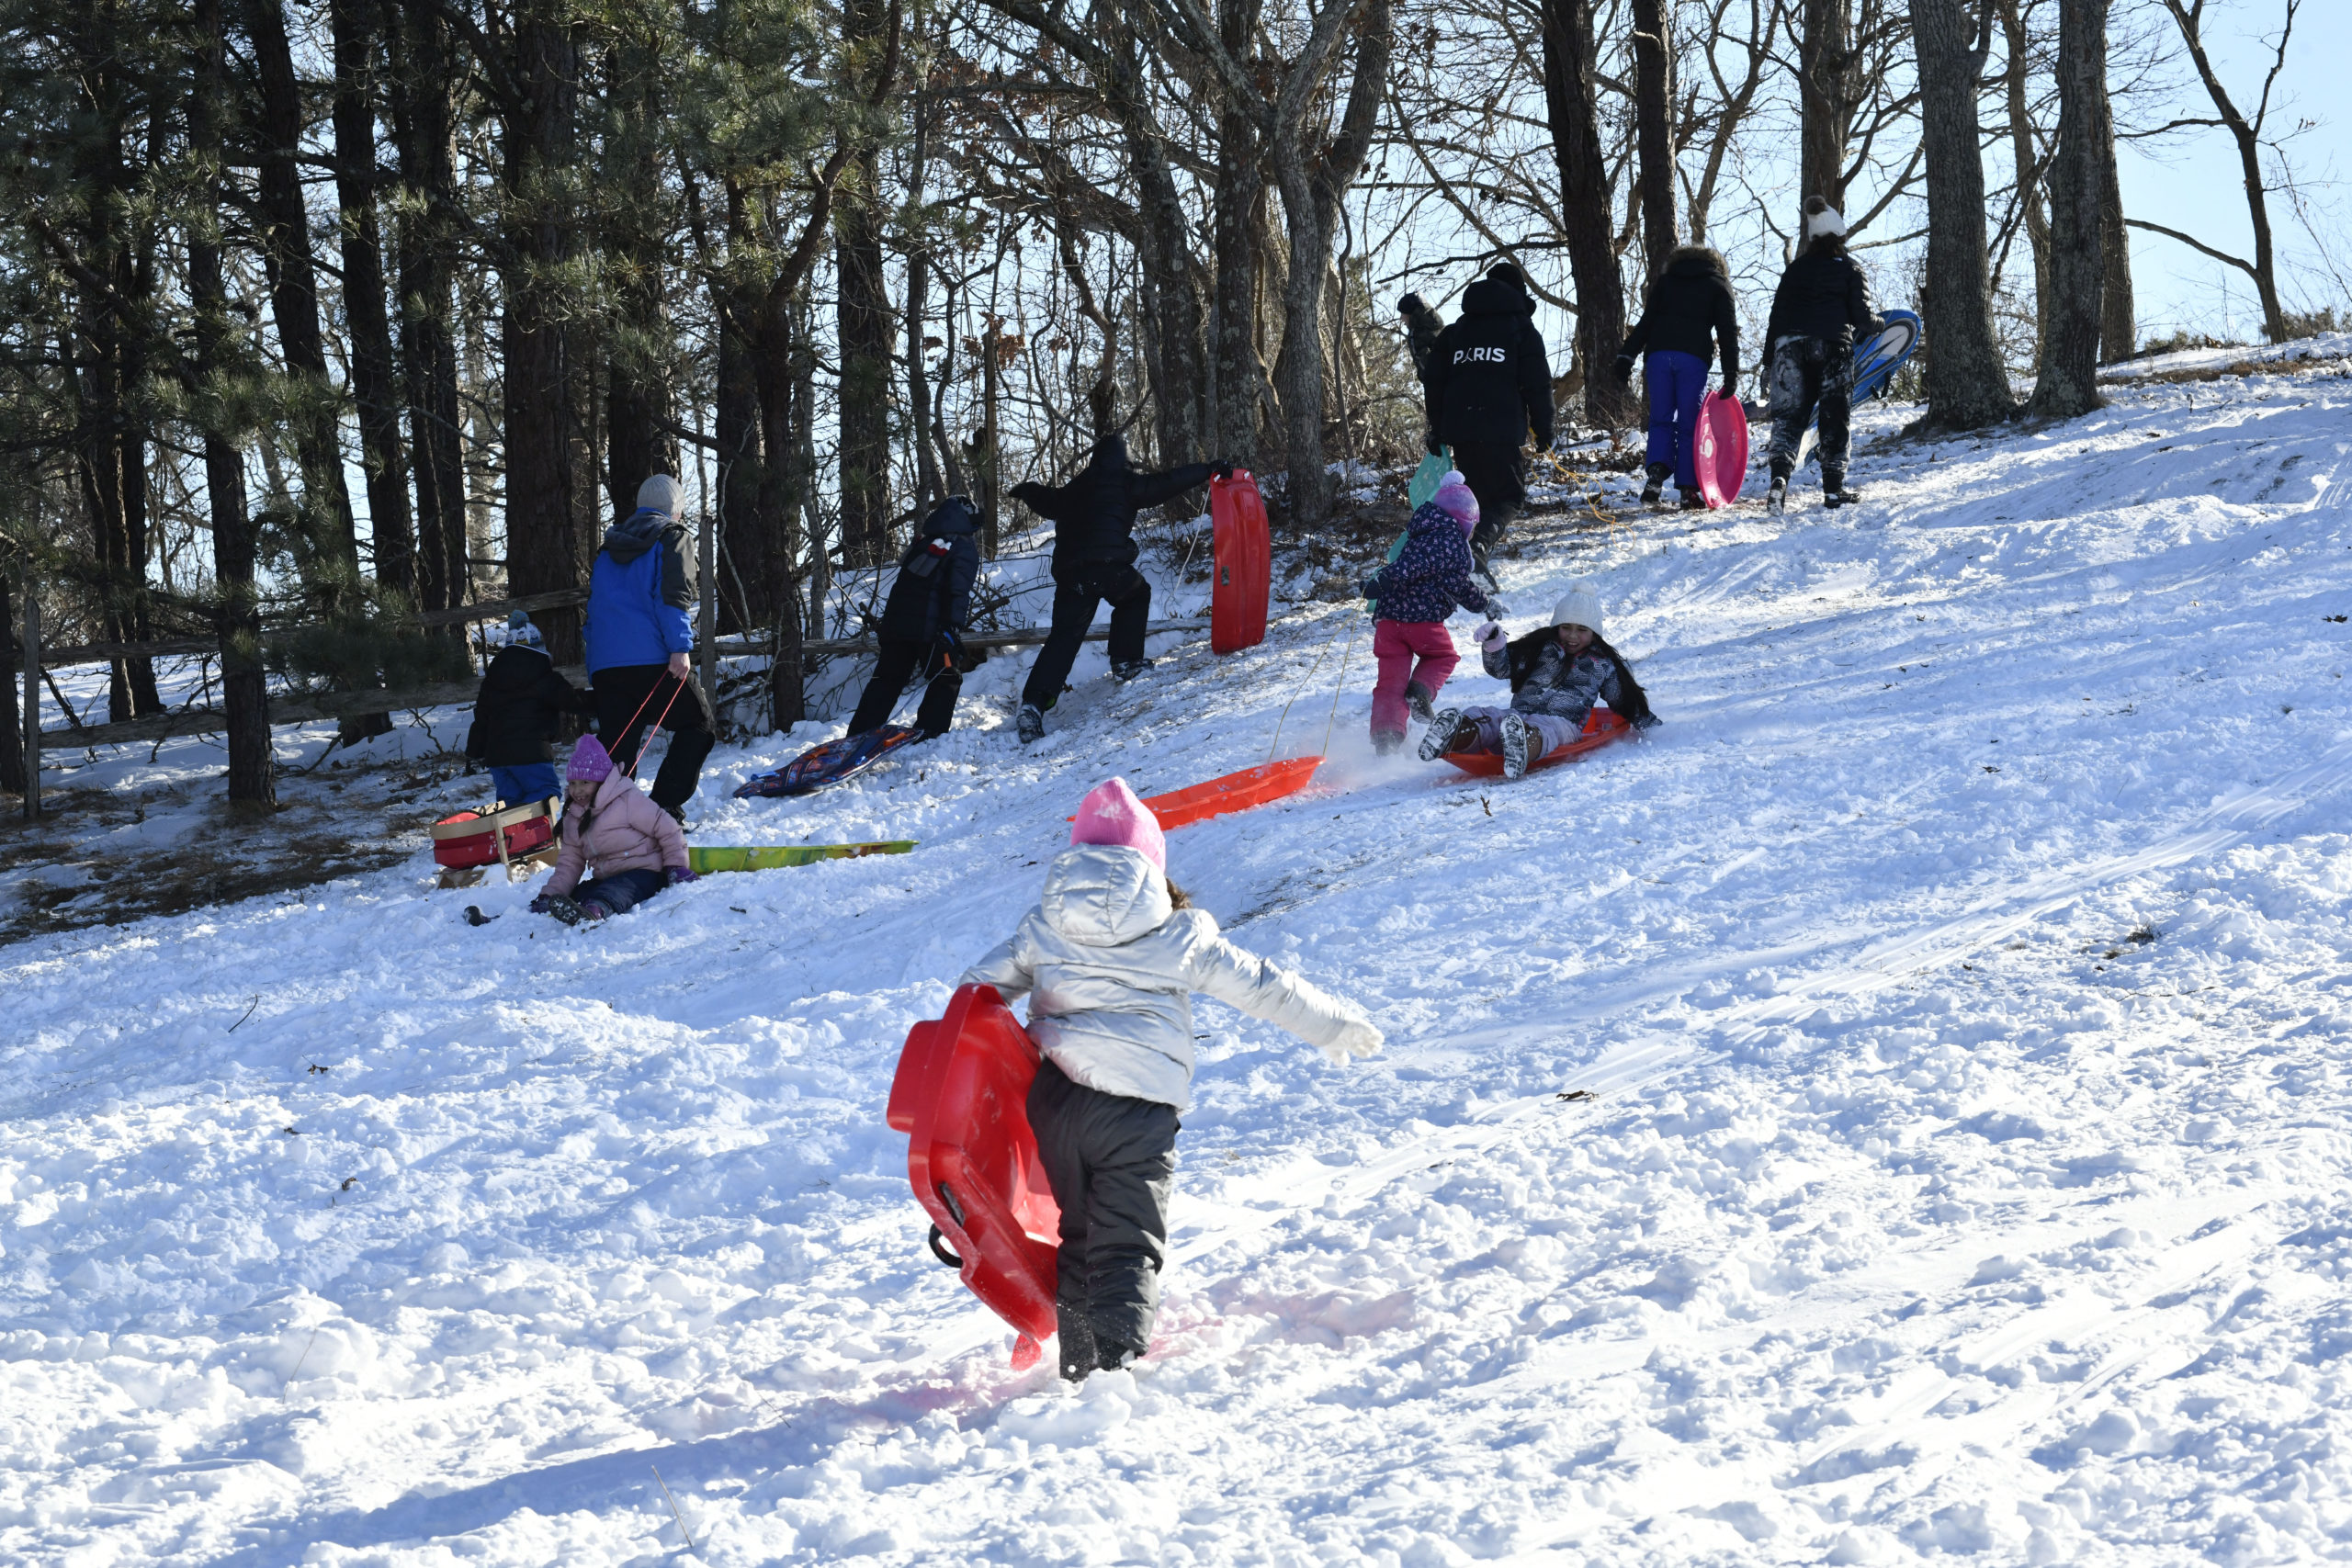 Kids in Bala Cynwyd celebrate snow day with sledding - CBS Philadelphia